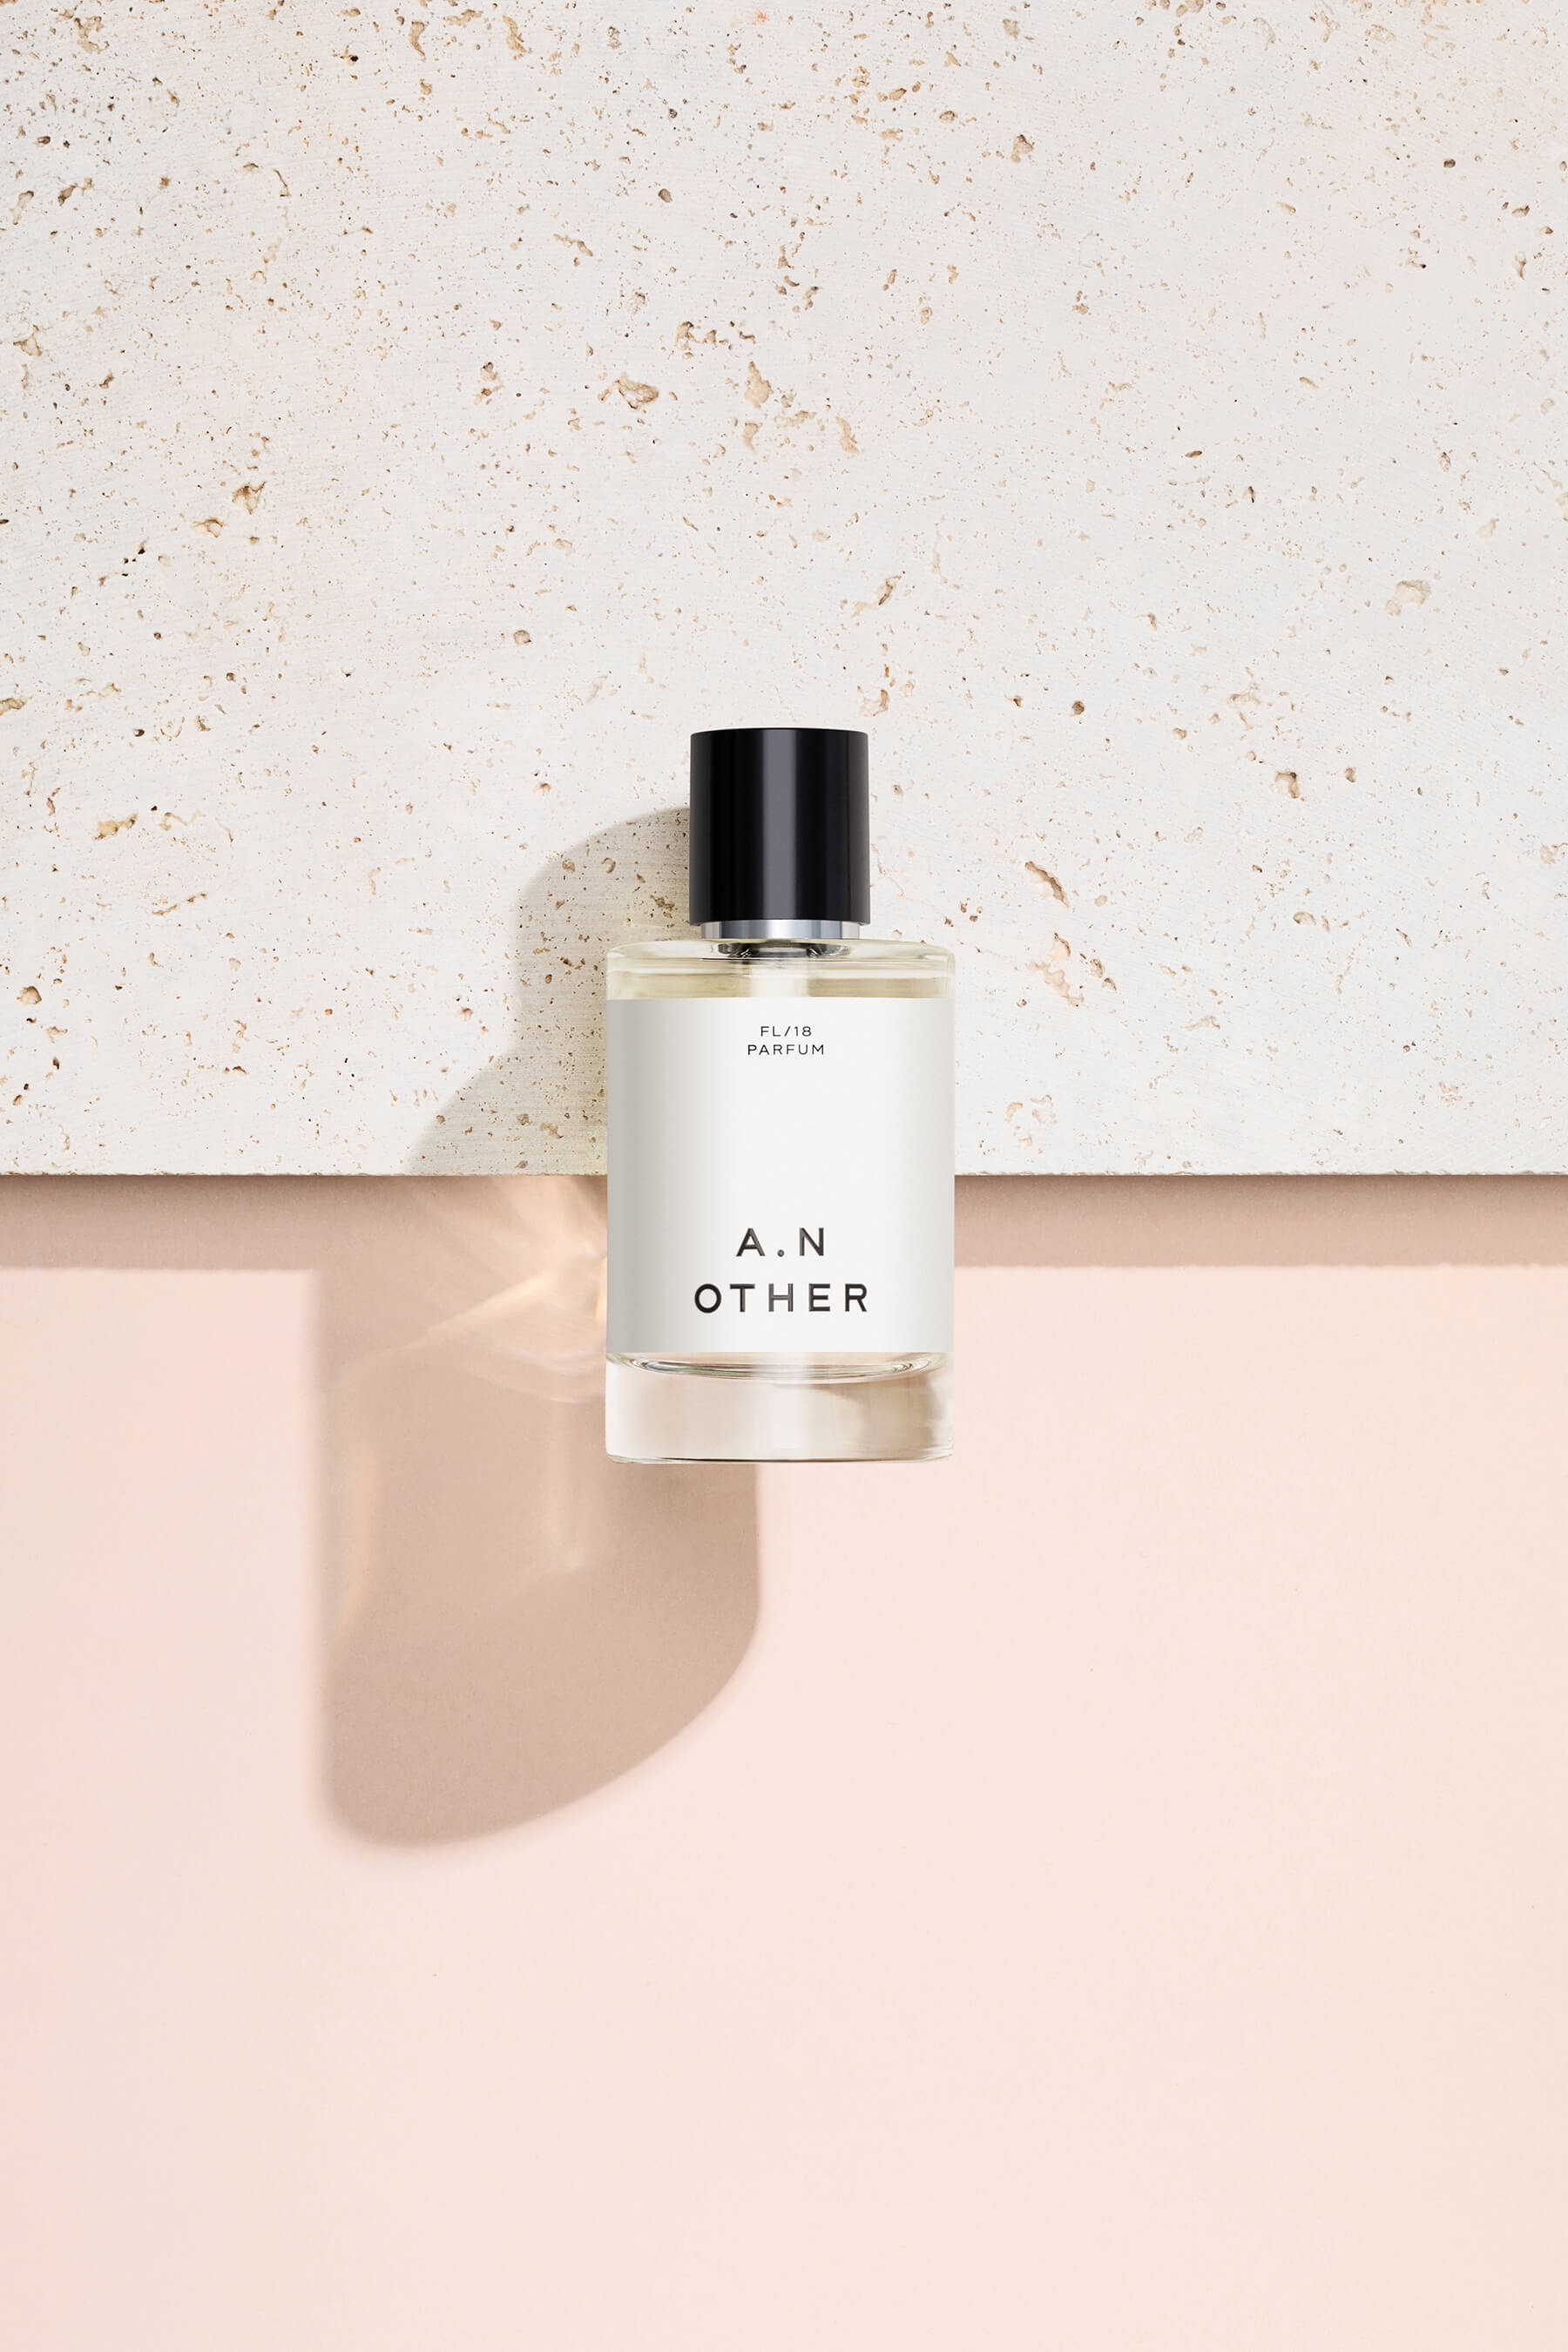 A.N. OTHER FL/2018 Parfum